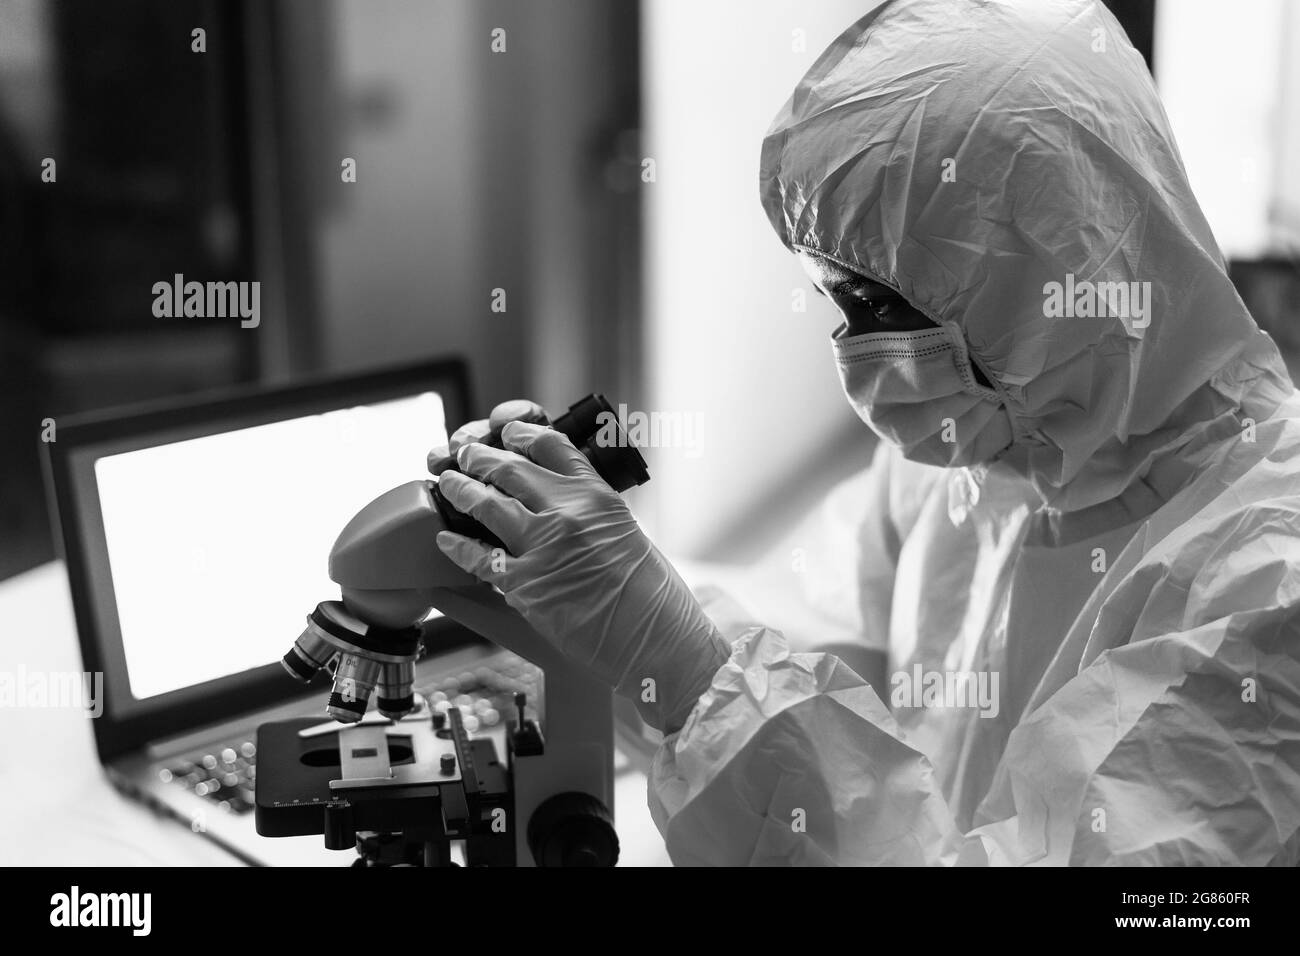 Wissenschaftlerinnen arbeiten in Forschungslabor untersucht Mikroorganismen durch Mikroskop - Wissenschaft und Technologie-Konzept Stockfoto